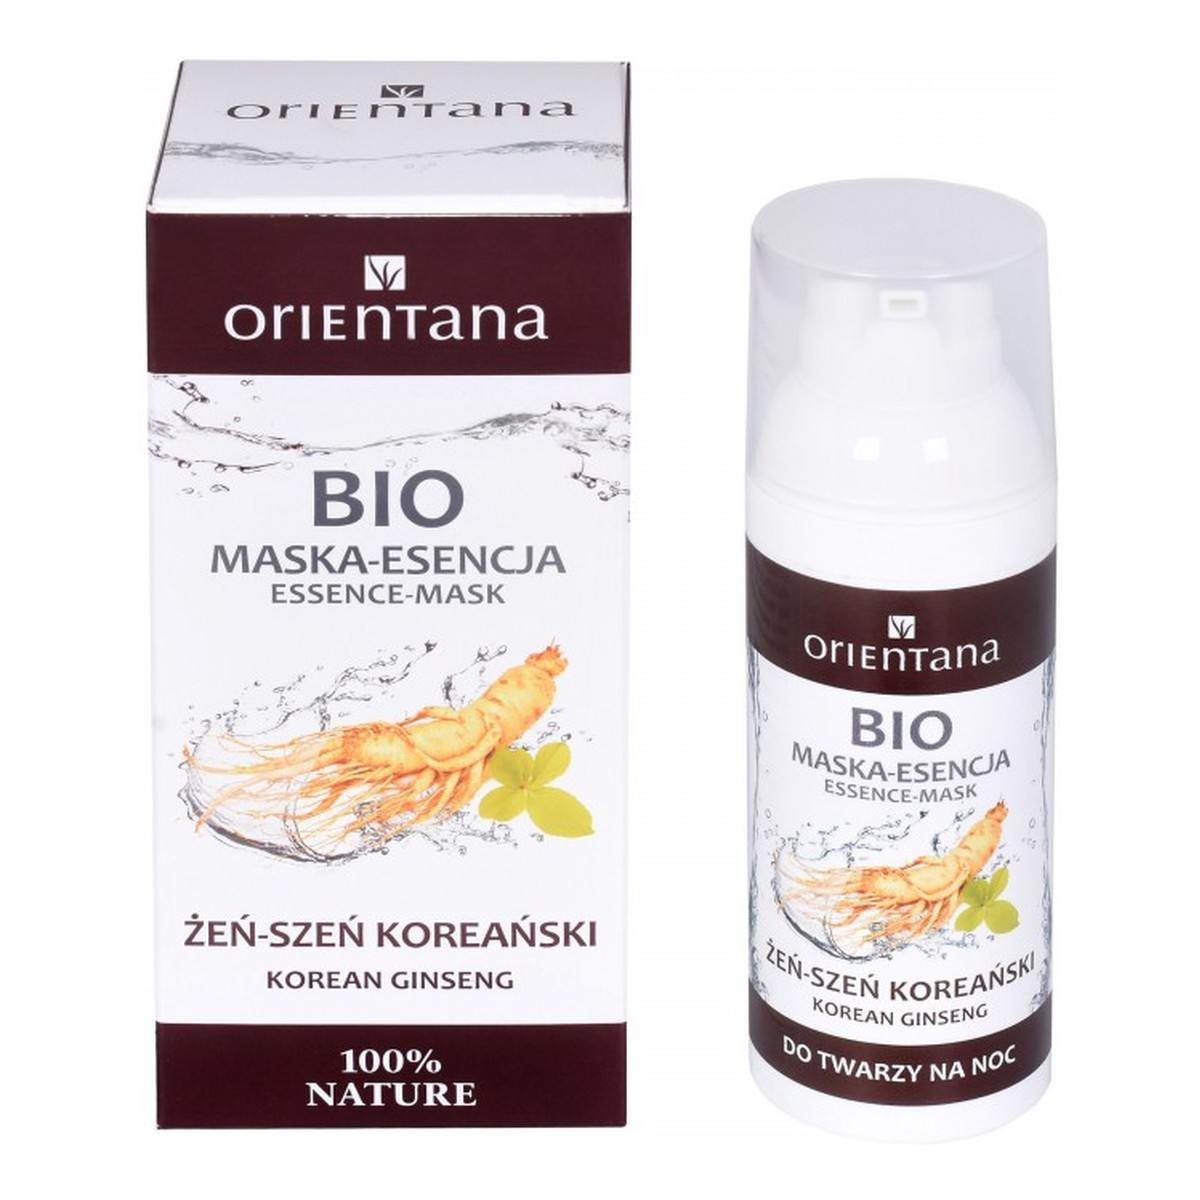 Orientana Bio Maska-esencja Żeń-szeń koreański 50ml